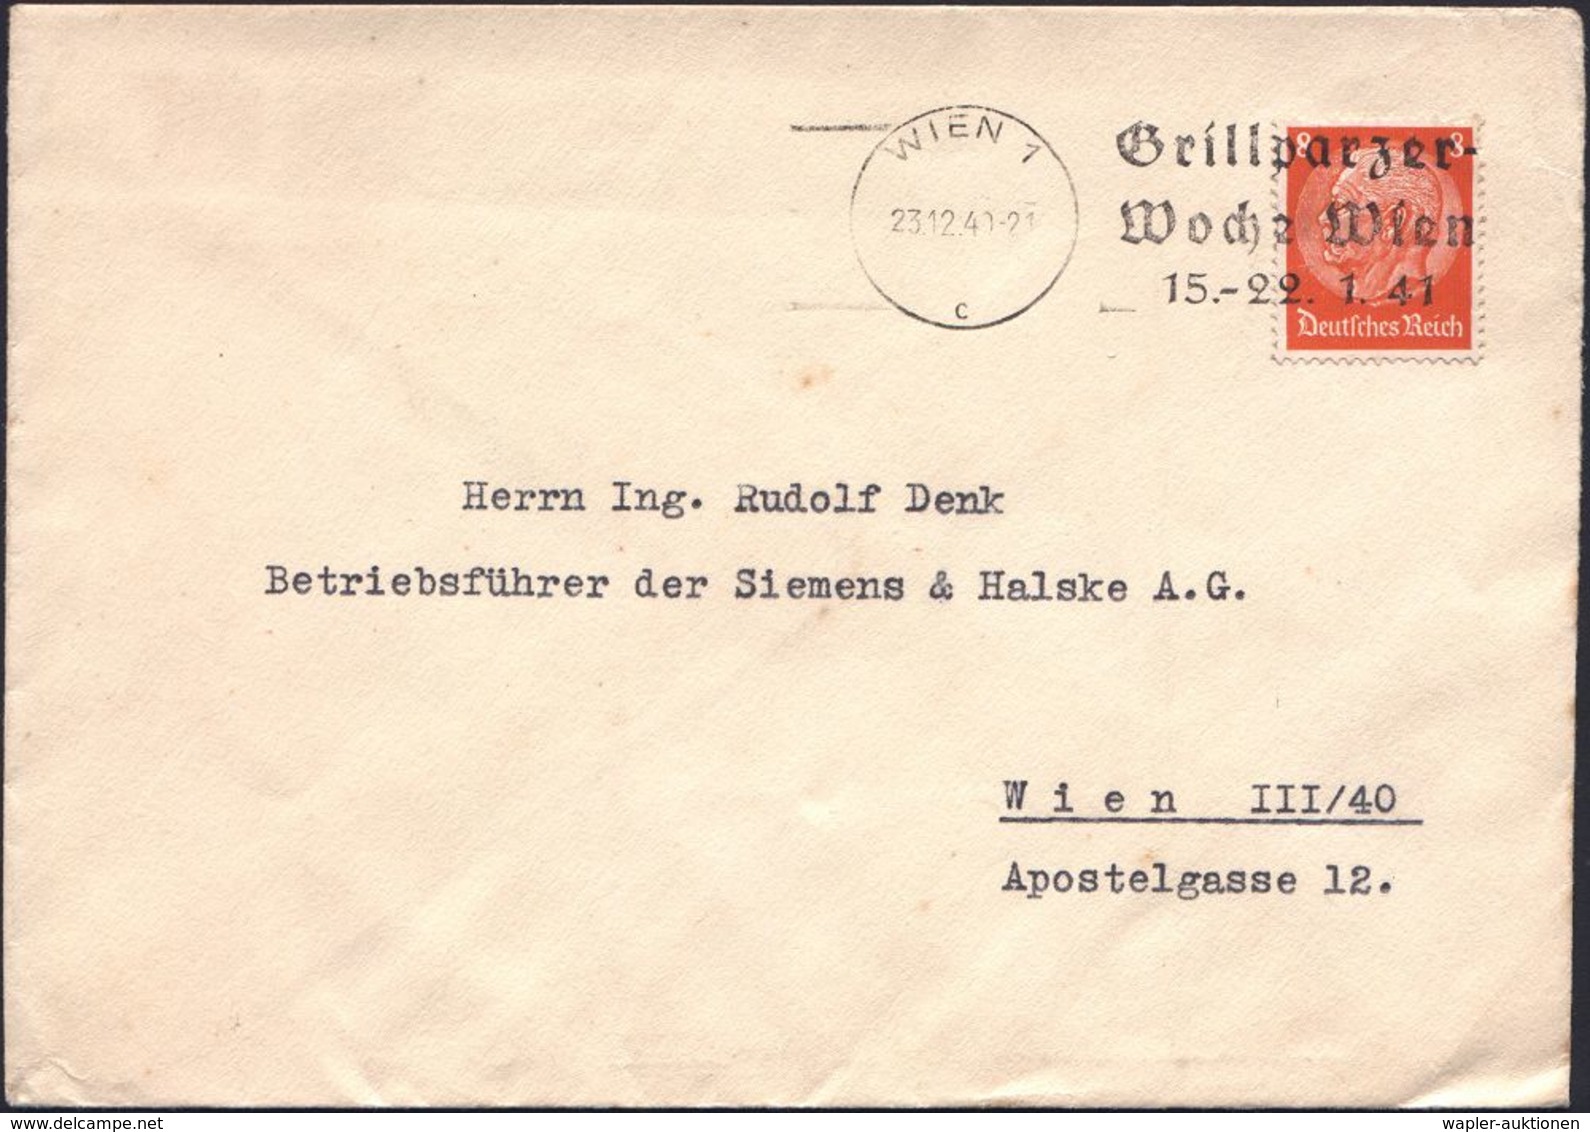 DEUTSCHSPRACHIGE DICHTER & LITERATUR : WIEN 1/ C/ Grillparzer-/ Woche Wien/ 15.-22.1.41 1941 (23.12.) Seltener MWSt, öst - Ecrivains